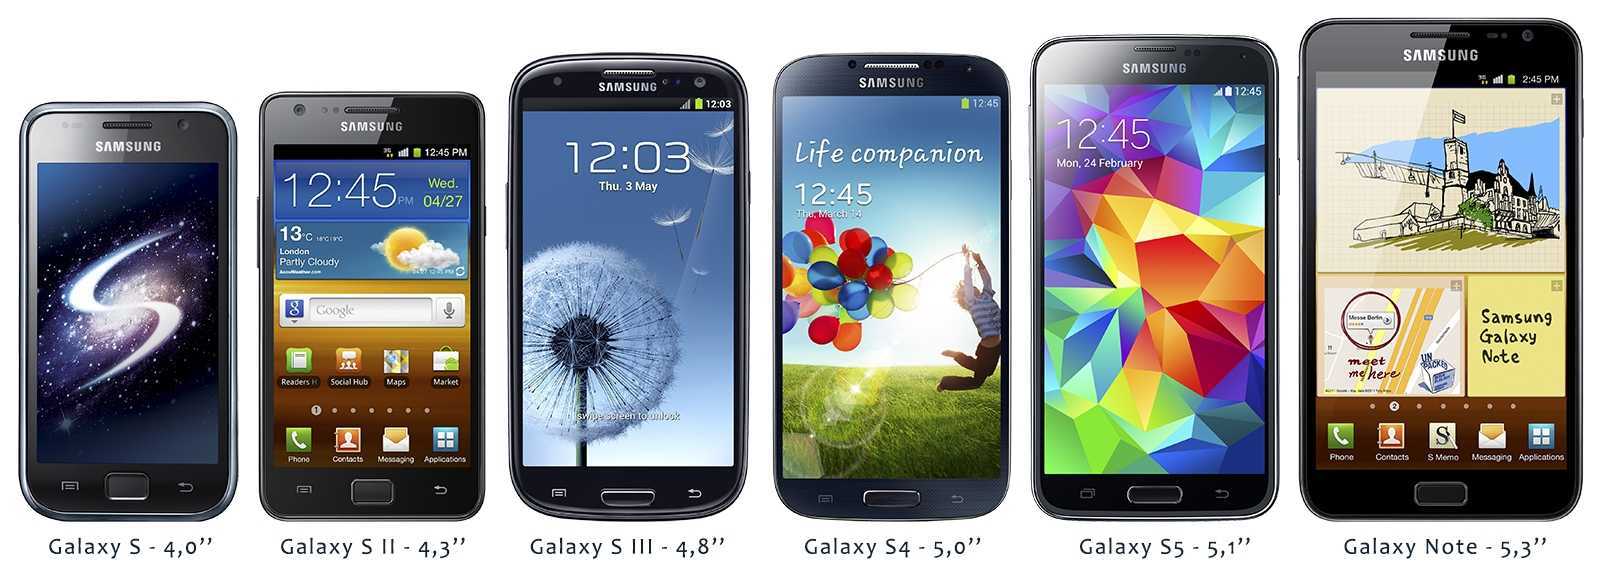 Разбираемся серии смартфонов samsung galaxy. какой лучше?